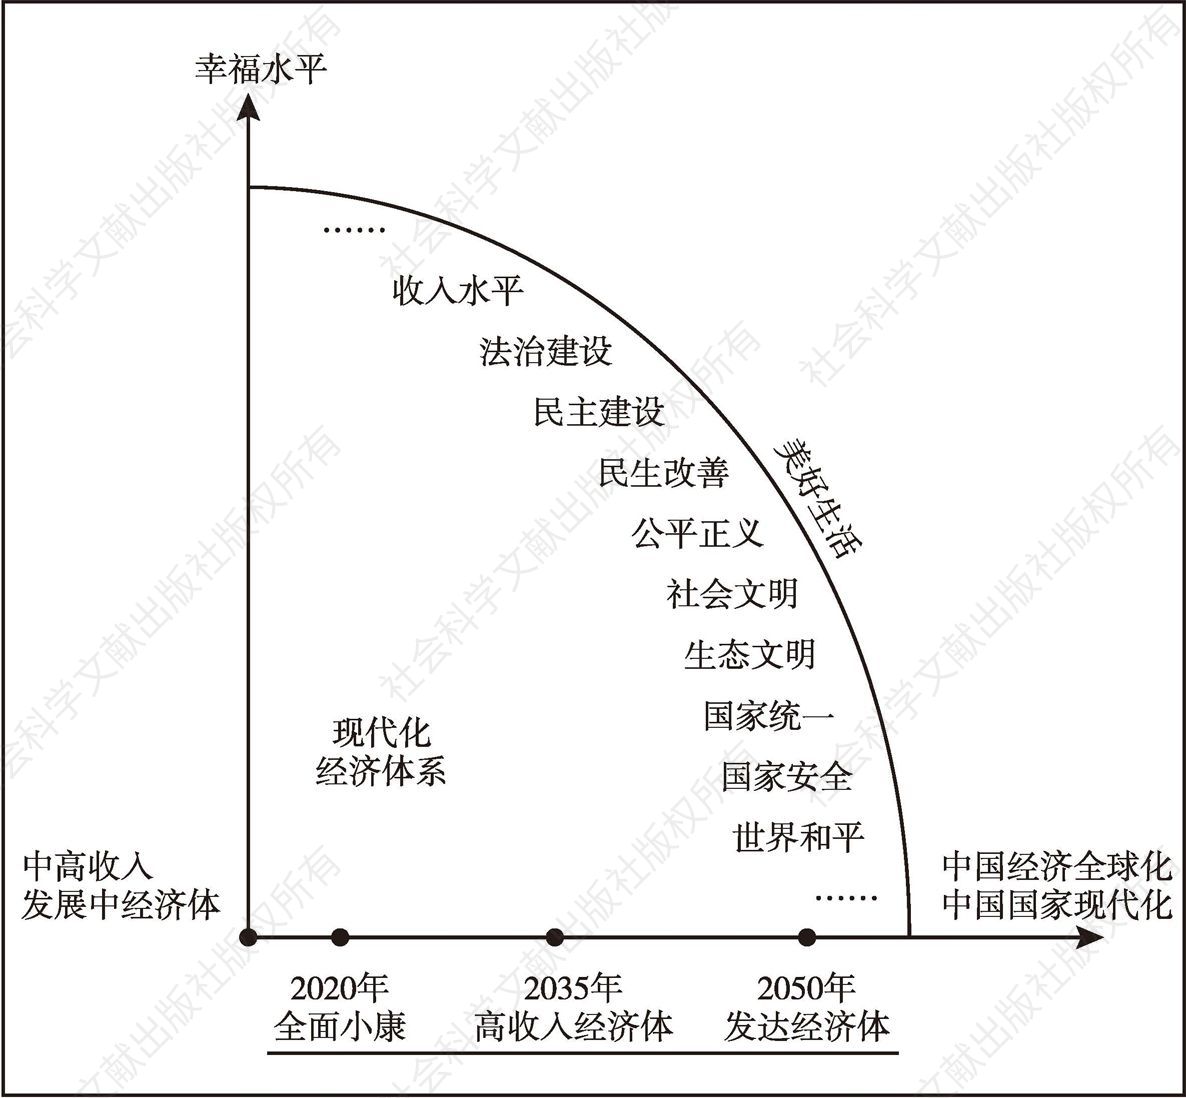 图1 中国新时代发展战略坐标